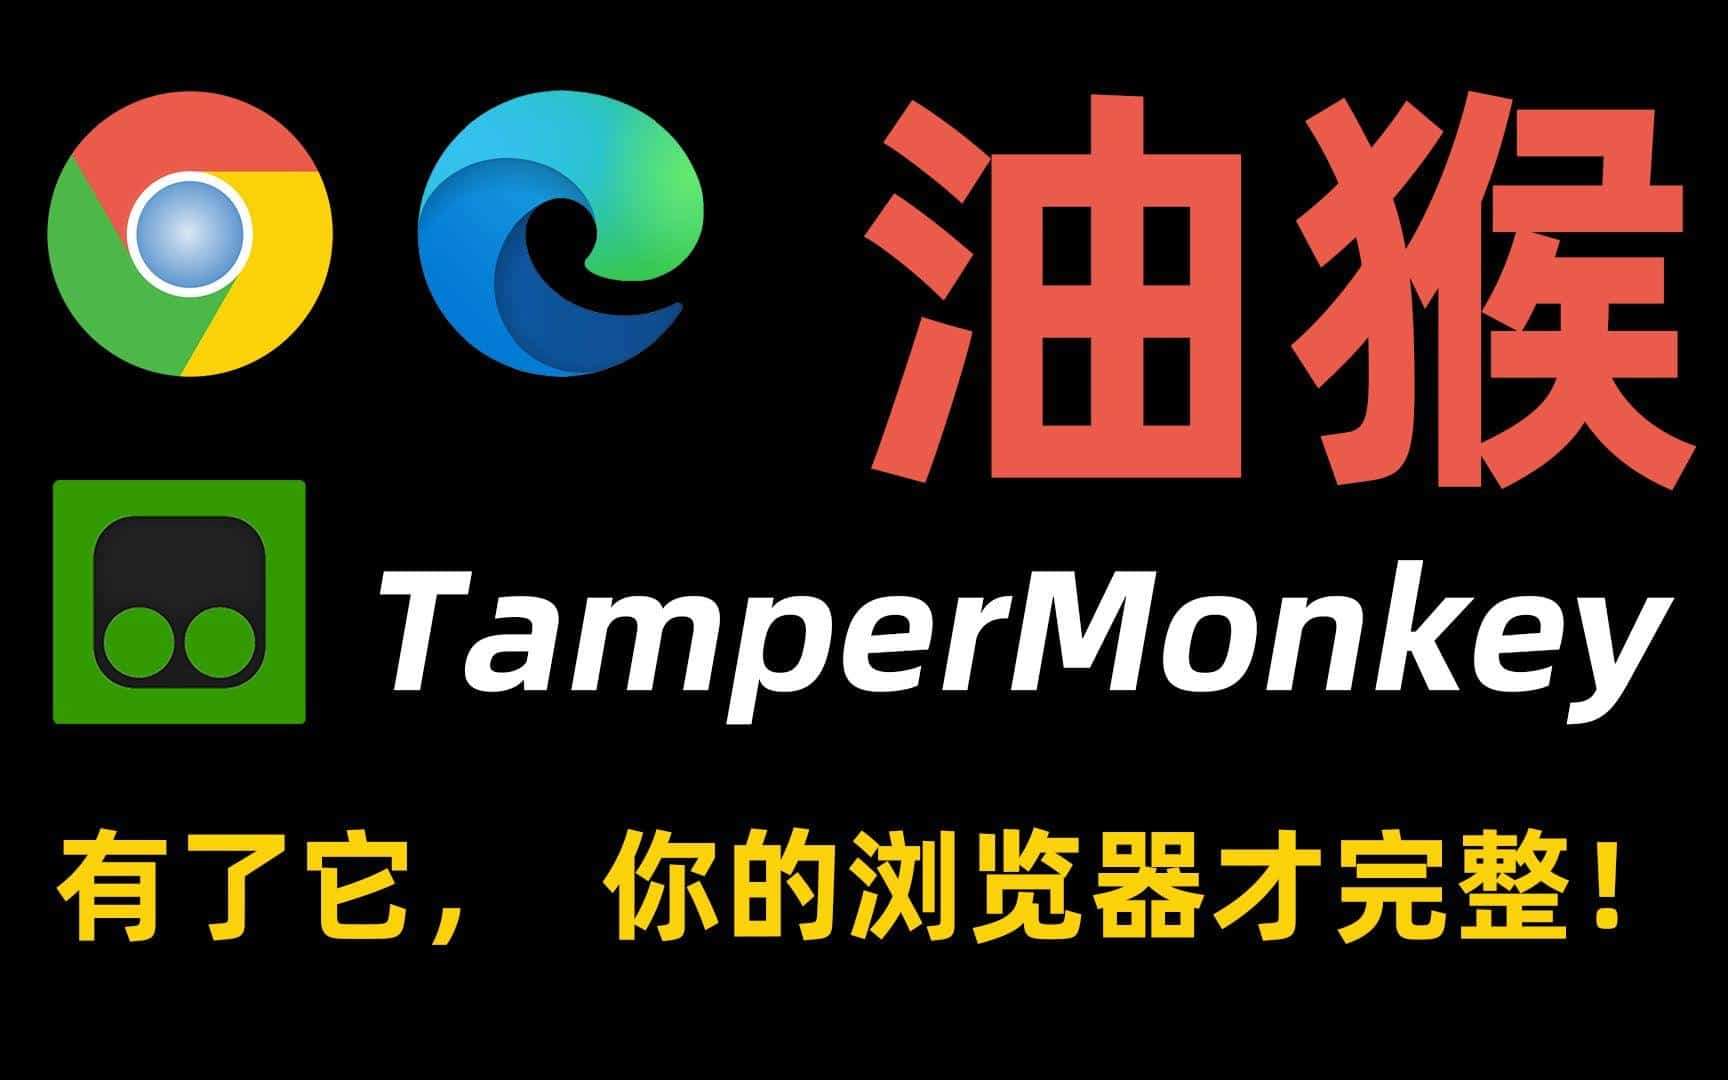 Tampermonkey 油猴脚本